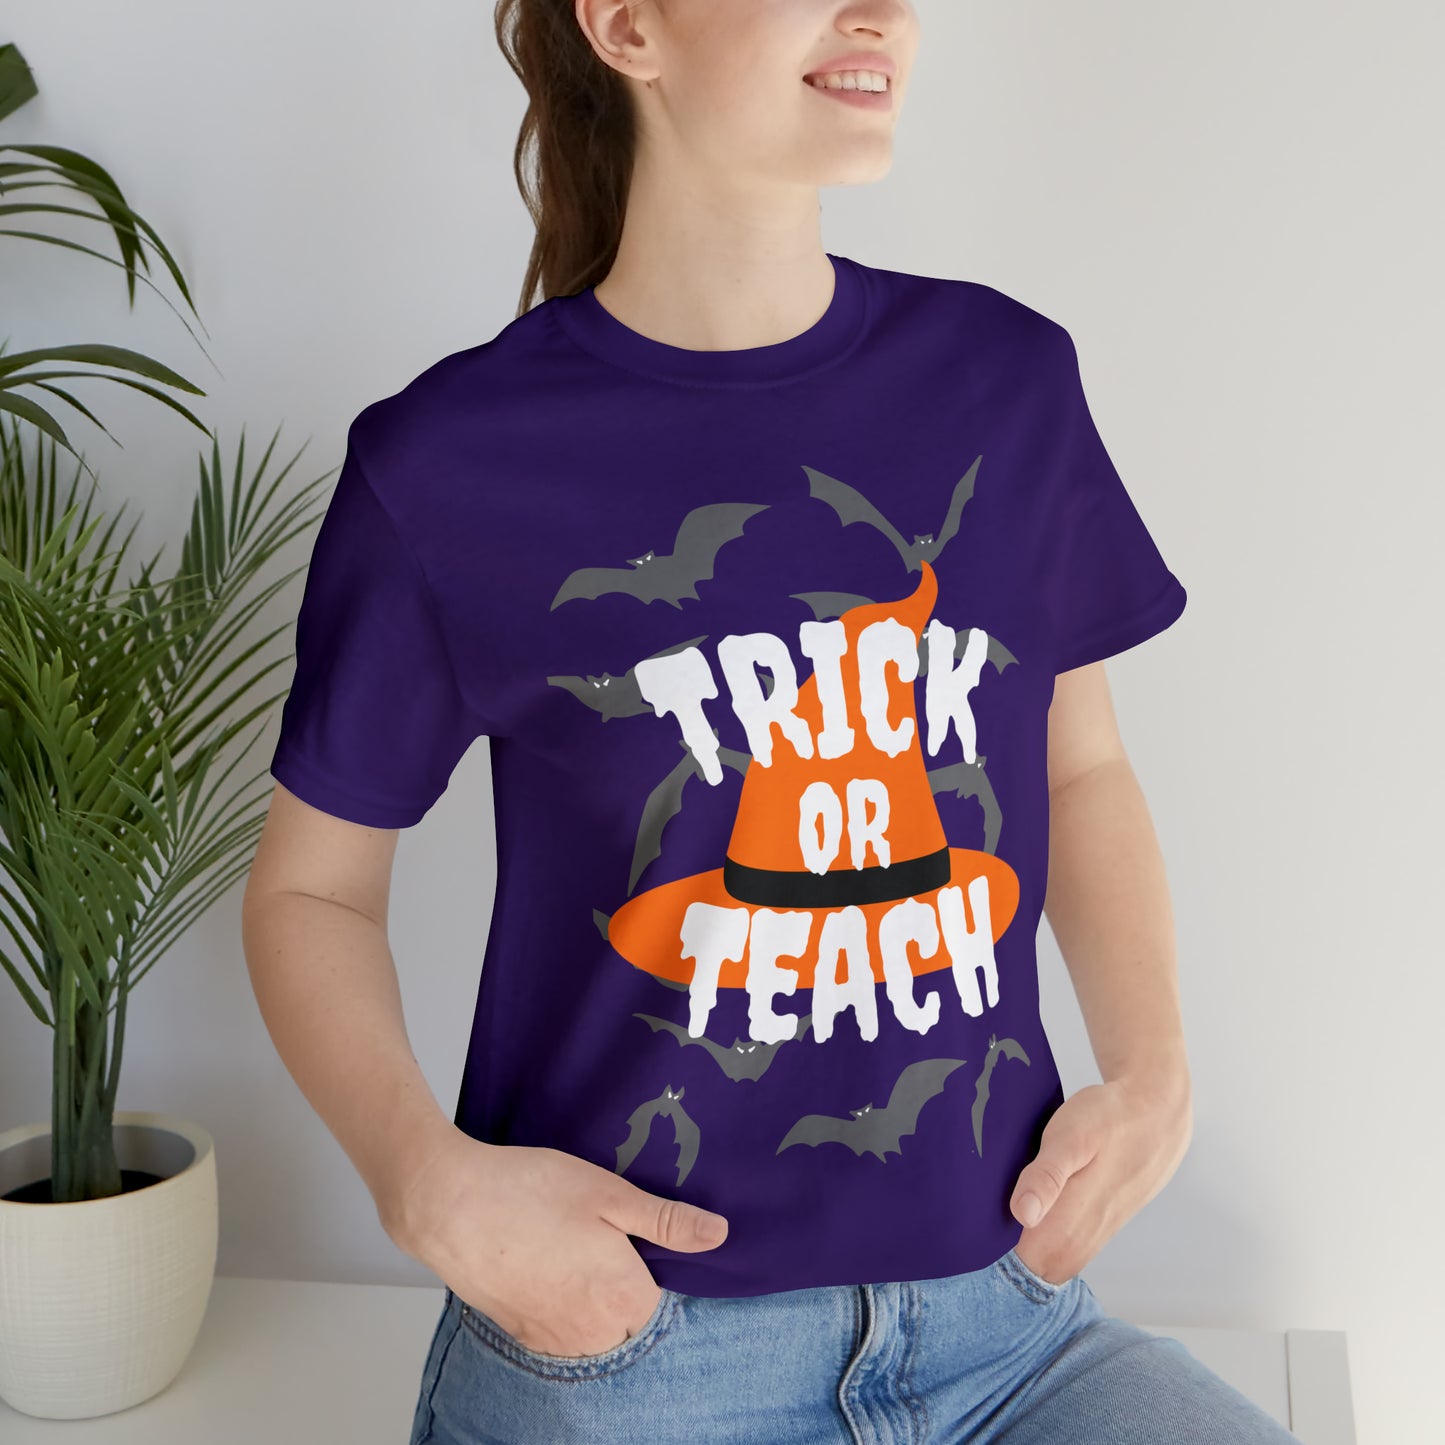 Trick or Teach Short Sleeve Tee